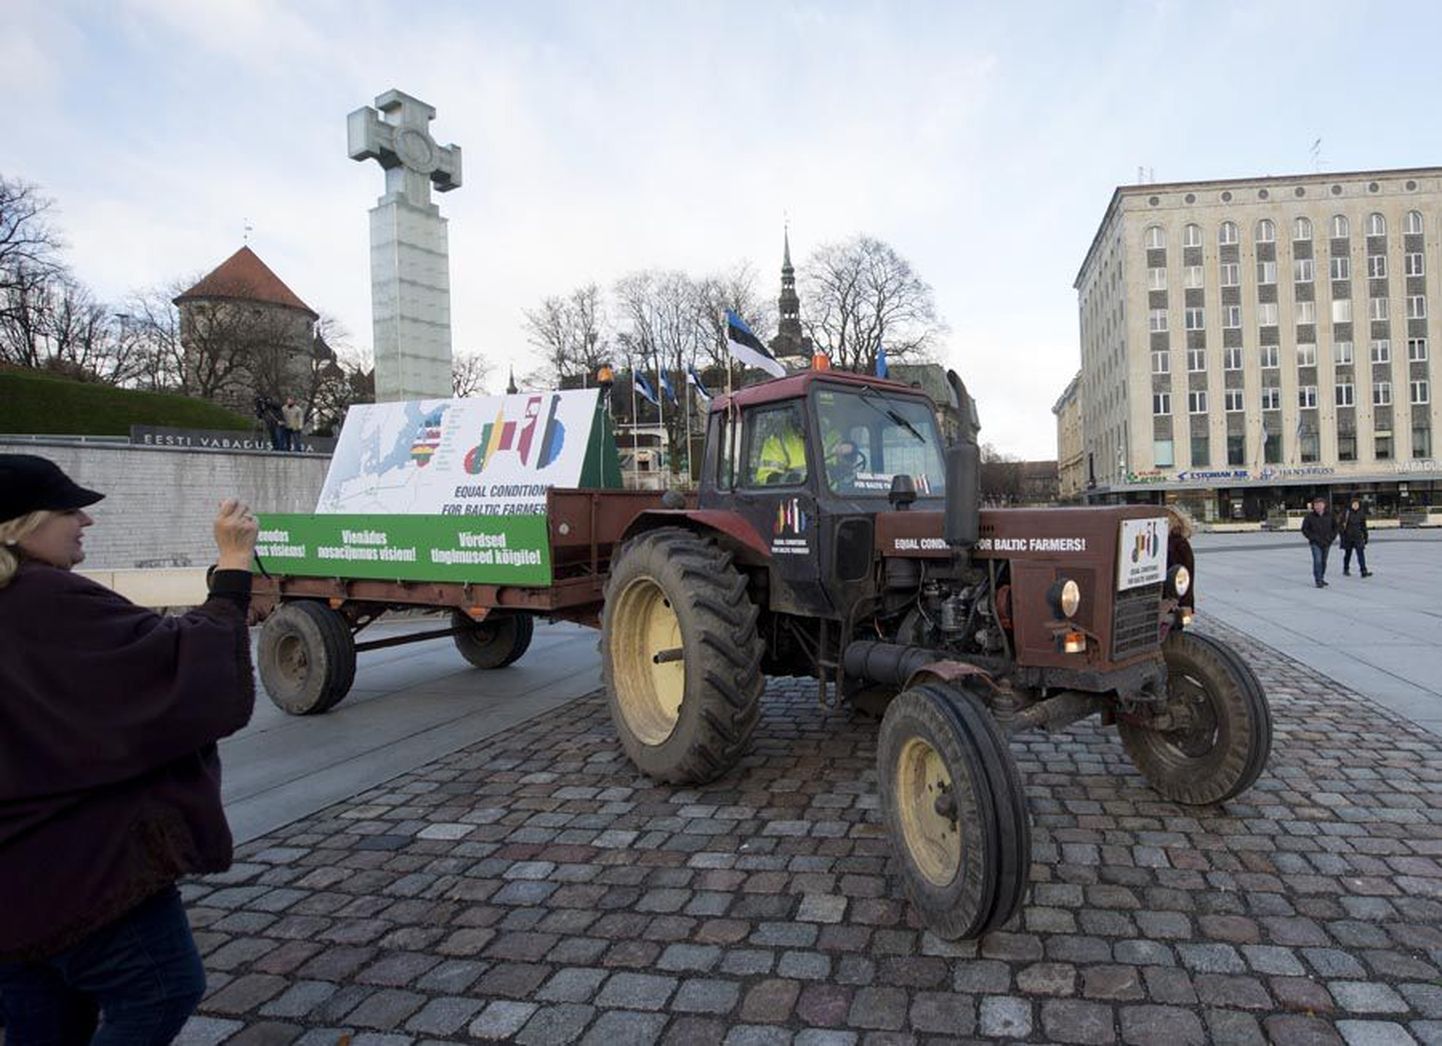 Põllumehed on varemgi meelt avaldades traktorid välja toonud. Näiteks 2012. aasta lõpul sõideti ühega protesti näitamiseks Tallinnast Brüsselisse.